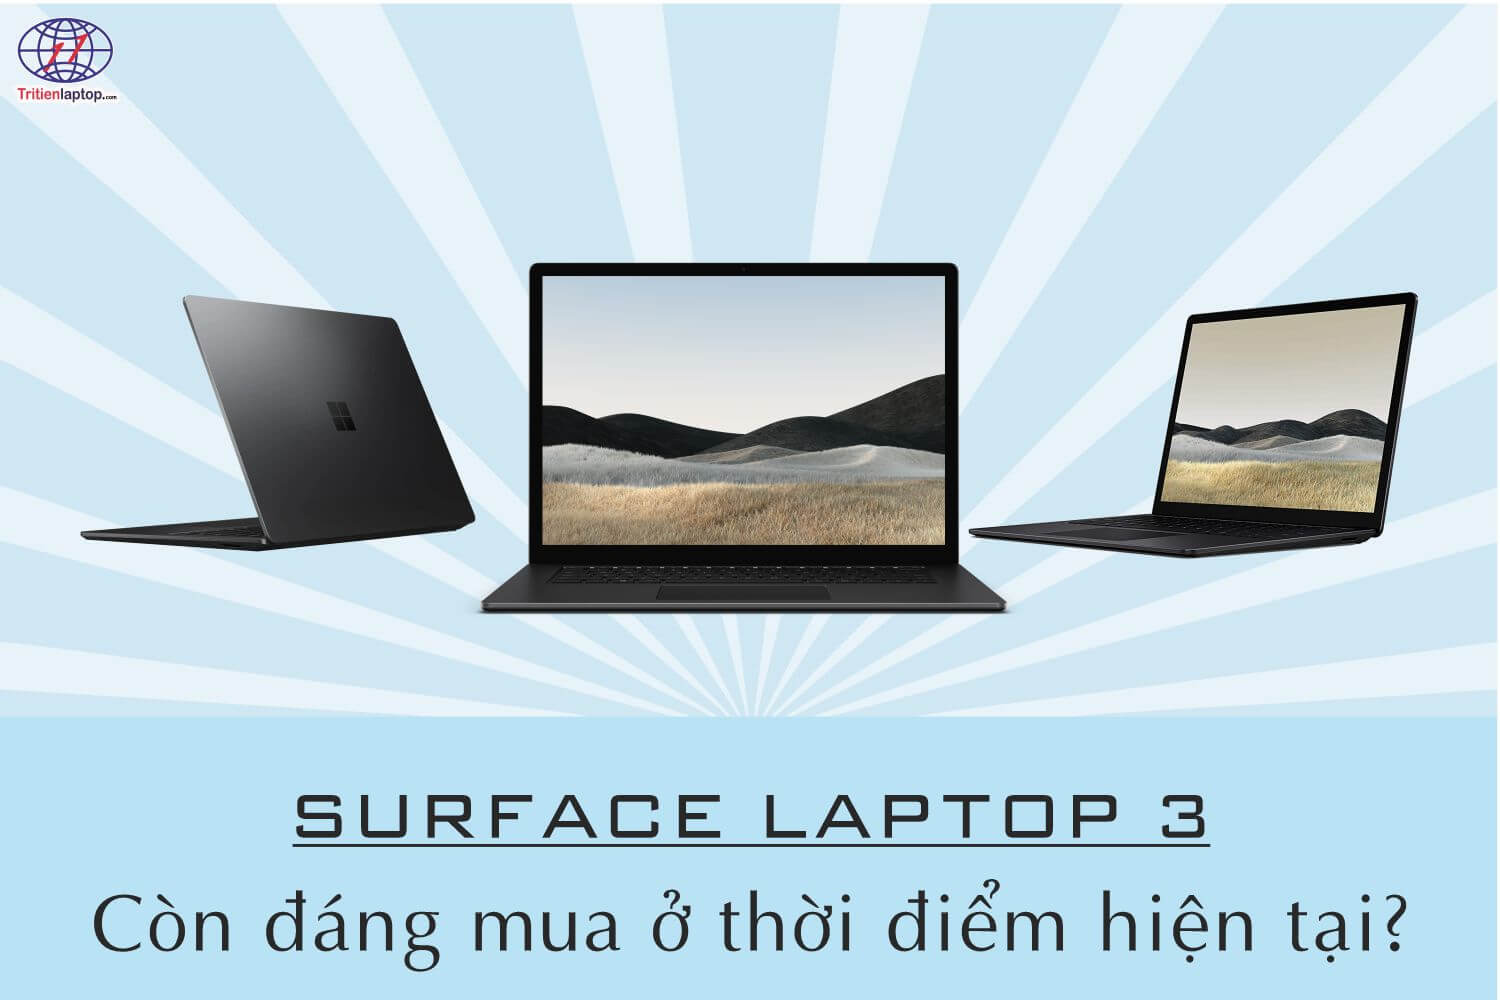 Có nên mua Surface Laptop 3 ở thời điểm hiện tại?